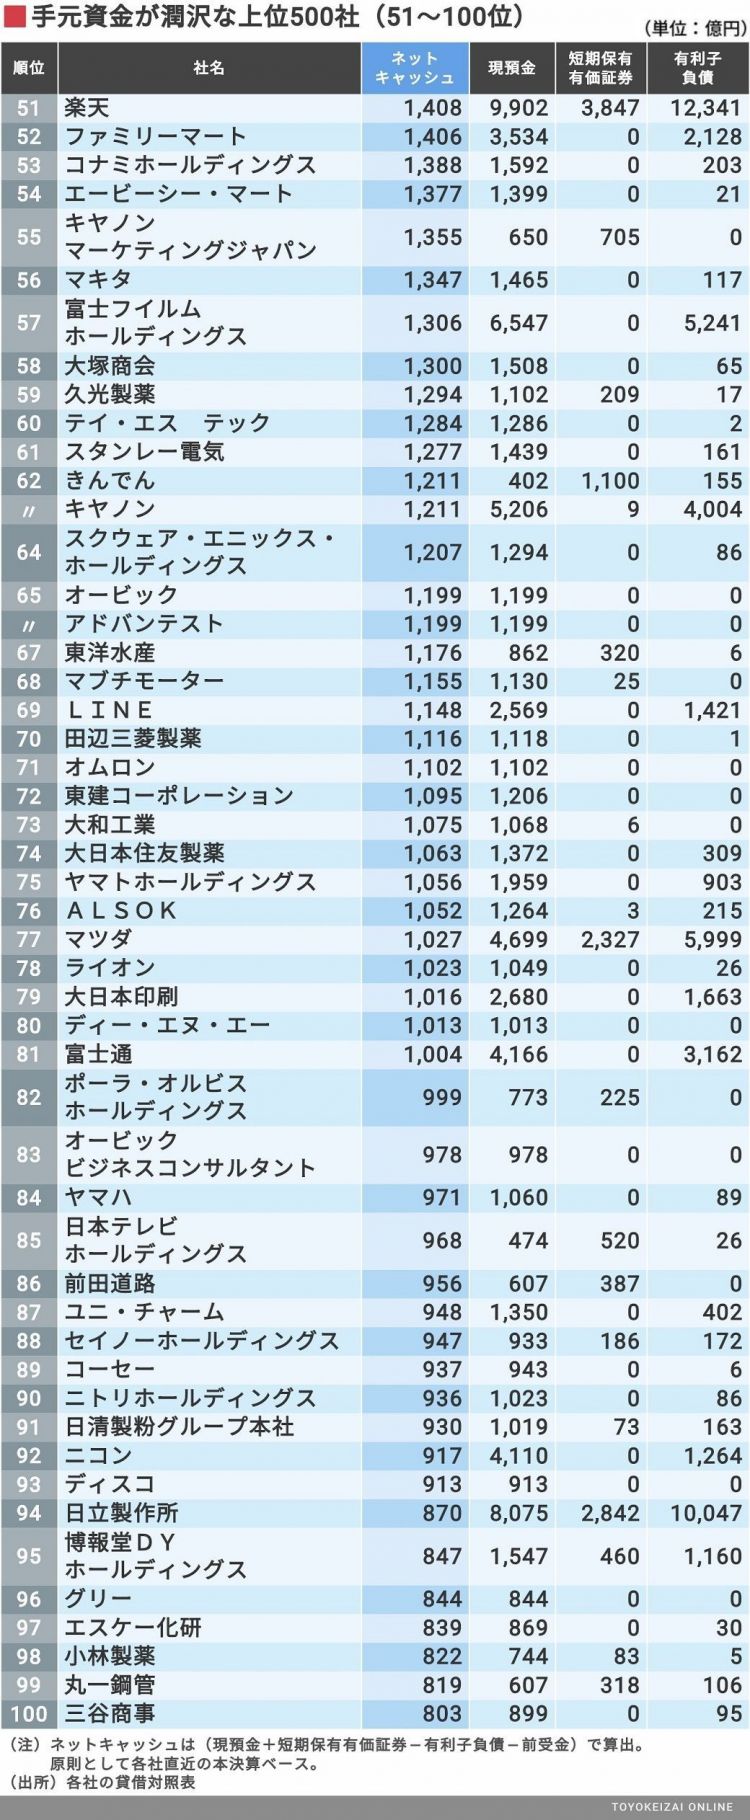 2019年日本企业现金流量排行榜公布，索尼再次夺得首位